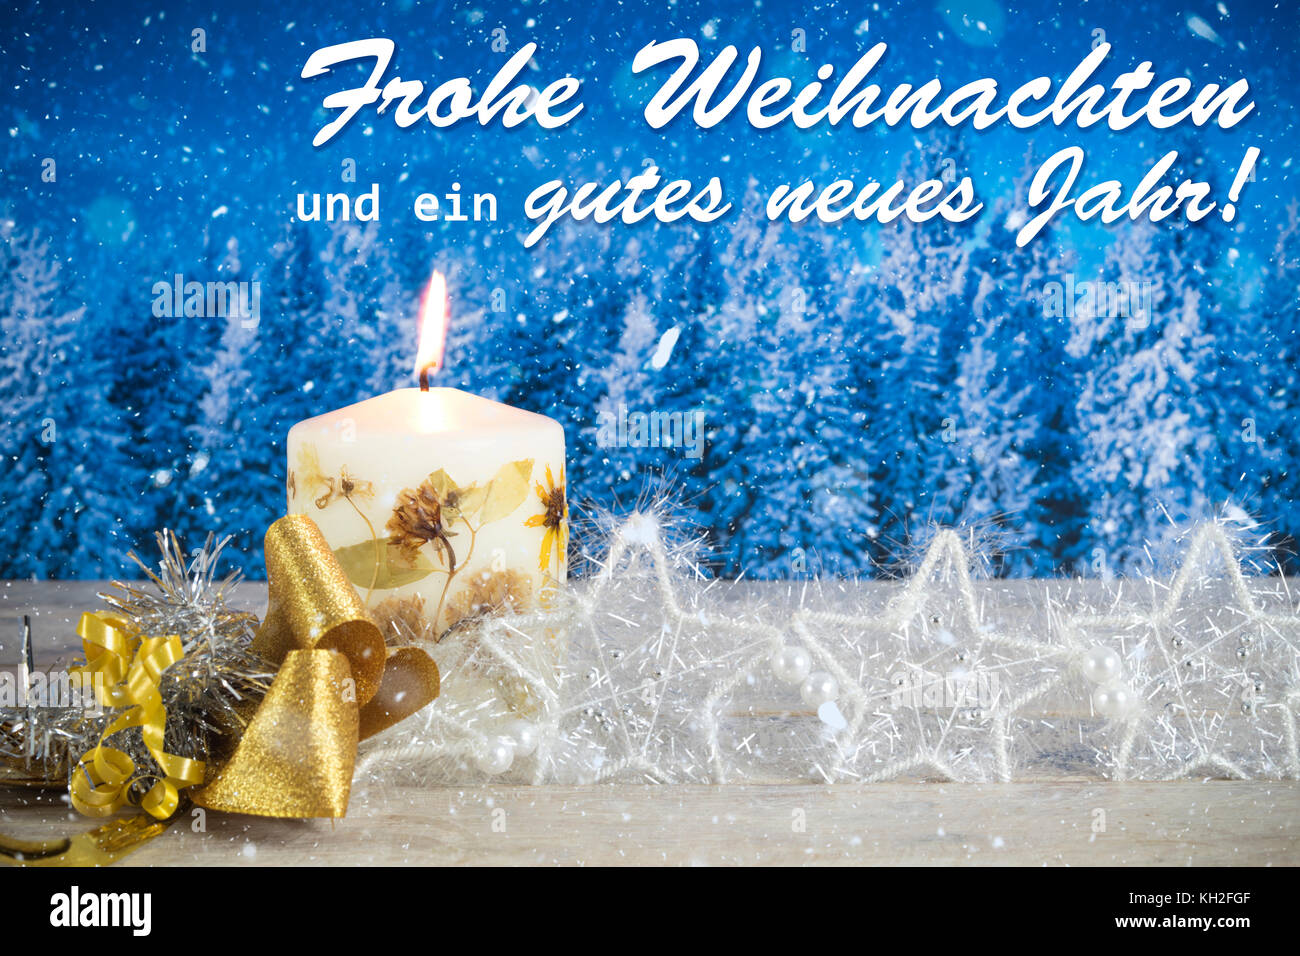 Décoration de Noël avec une bougie, archet d'or, d'argent étoile, avec texte en allemand "frohe weihnachten und ein gutes neues jahr' dans une forêt bleue backgrou Banque D'Images